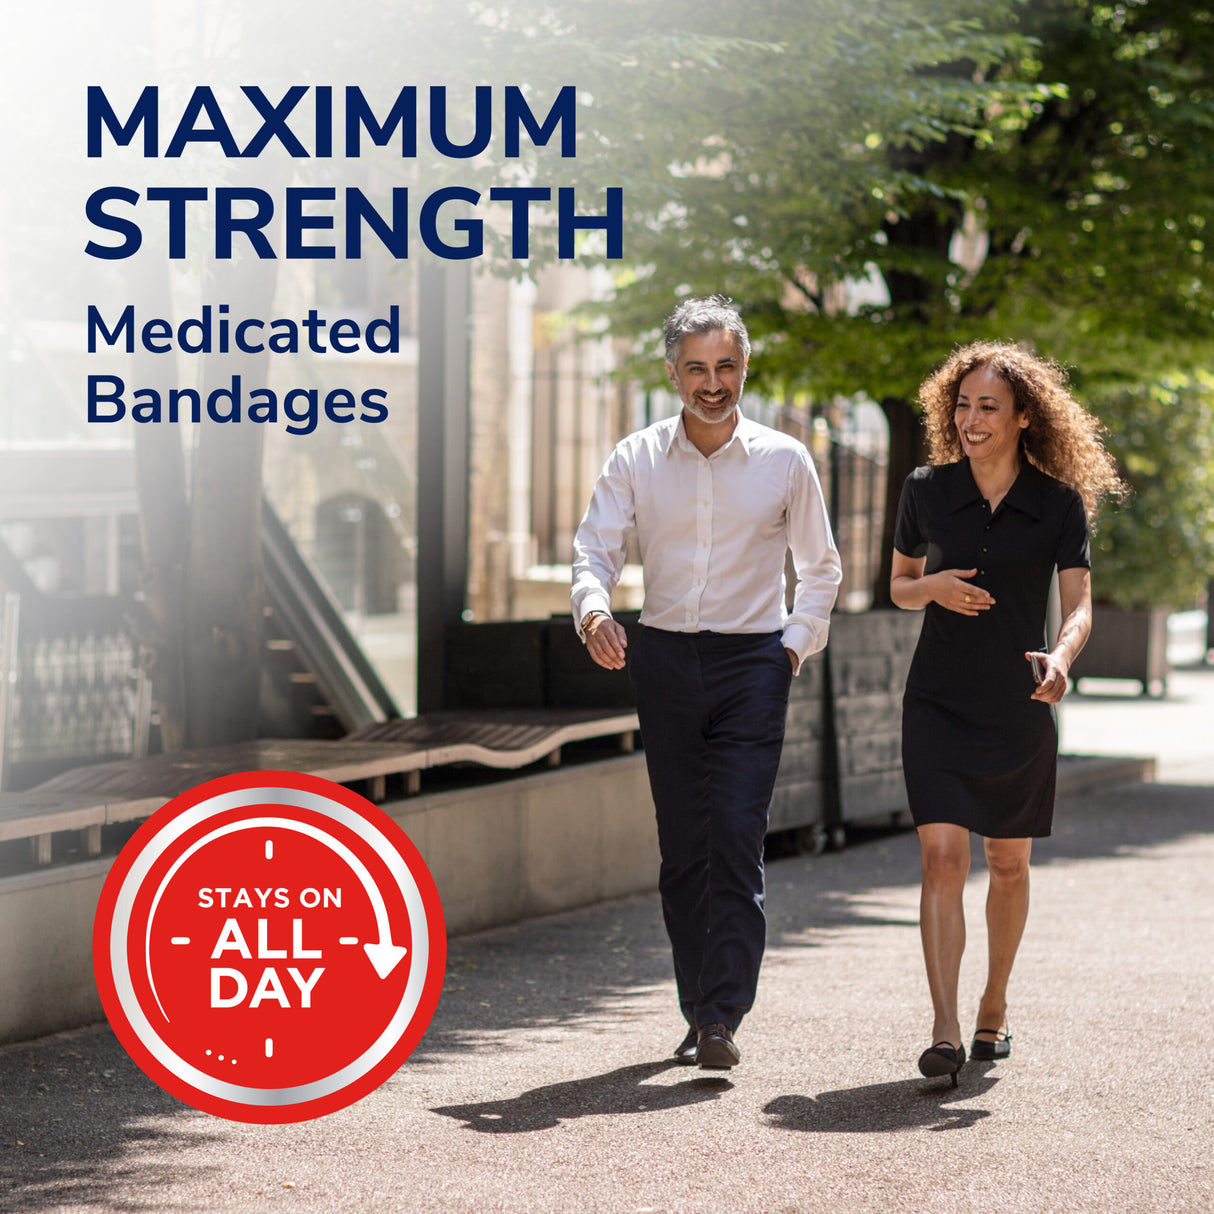 image of maximum strength medicated bandages